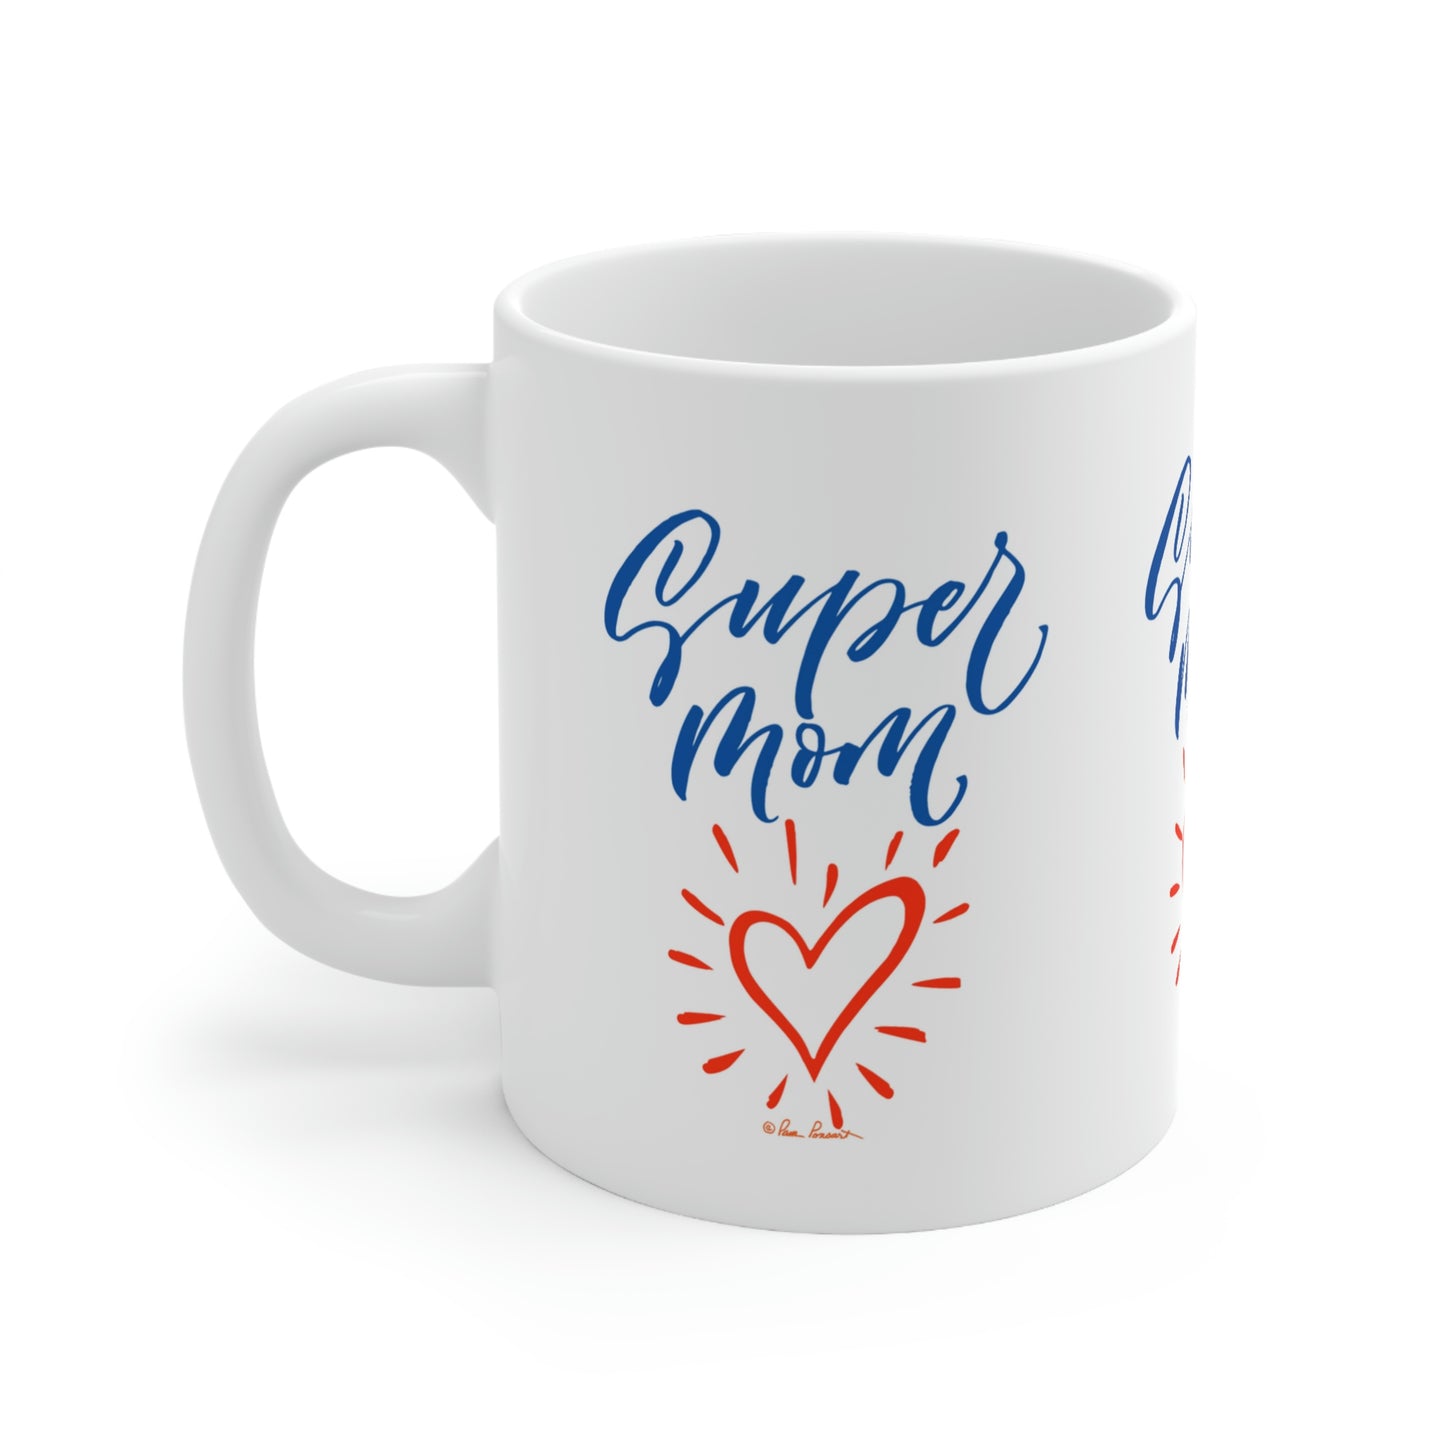 Mom's Day Mug: White; Ceramic; 11oz; Textual Graphics